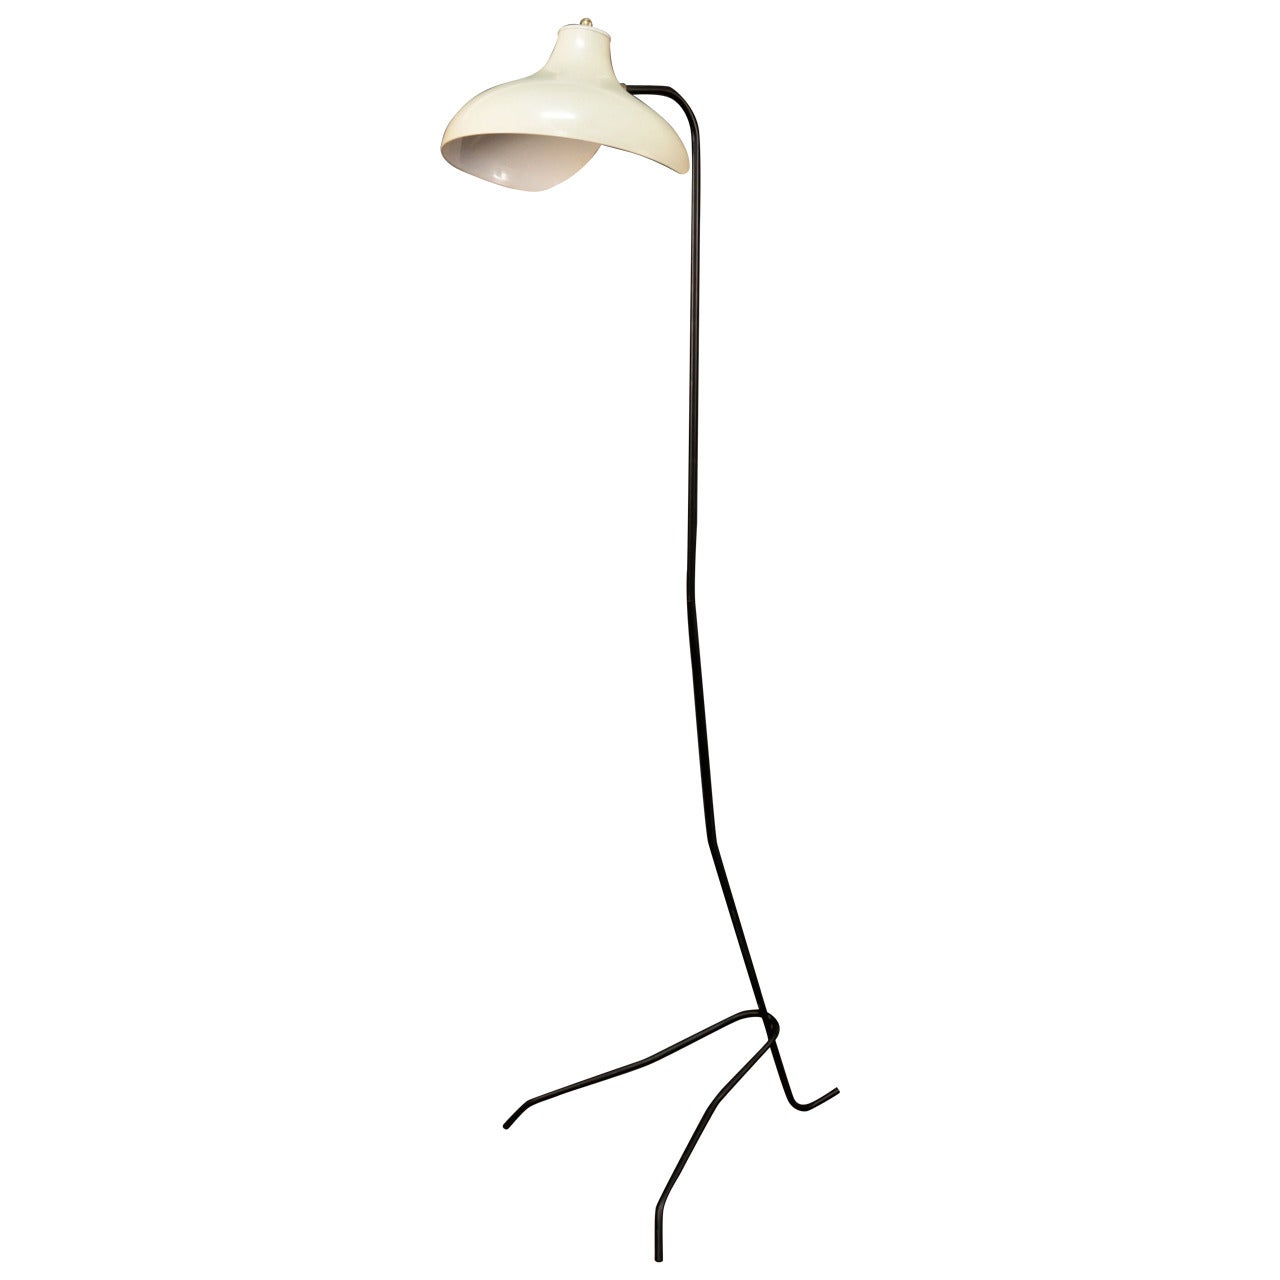 1950s Stilnovo Floor Lamp